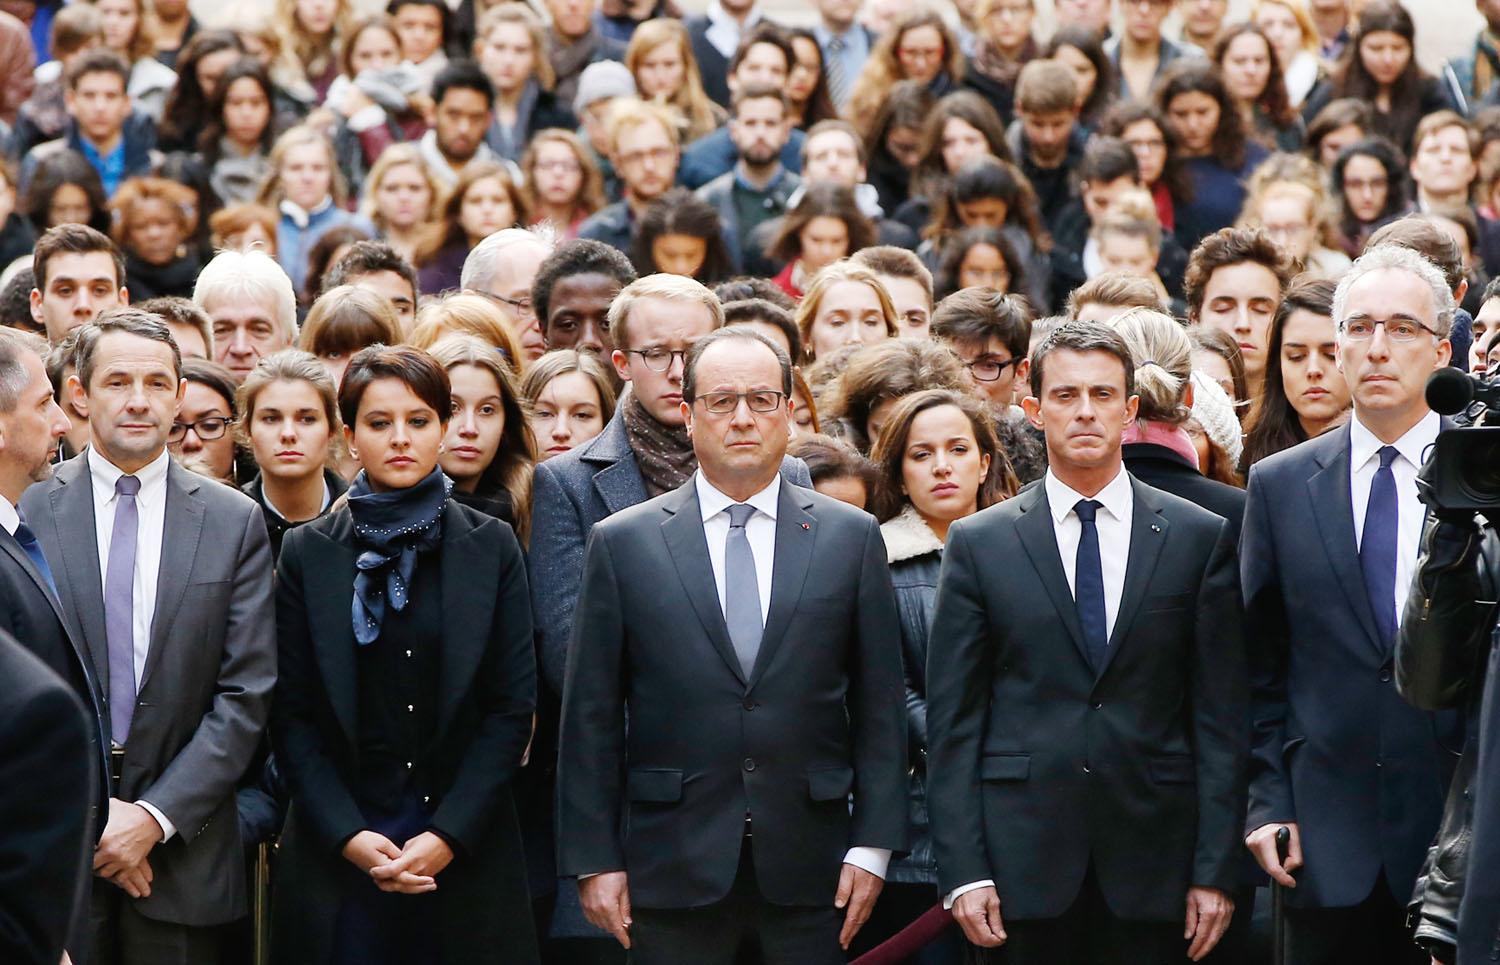 Kemény tekintetek. Francois Hollande francia államfő (középen) és Manuel Valls miniszterelnök (jobbról a második) a párizsi Sorbonne-on rendezett megemlékezésen